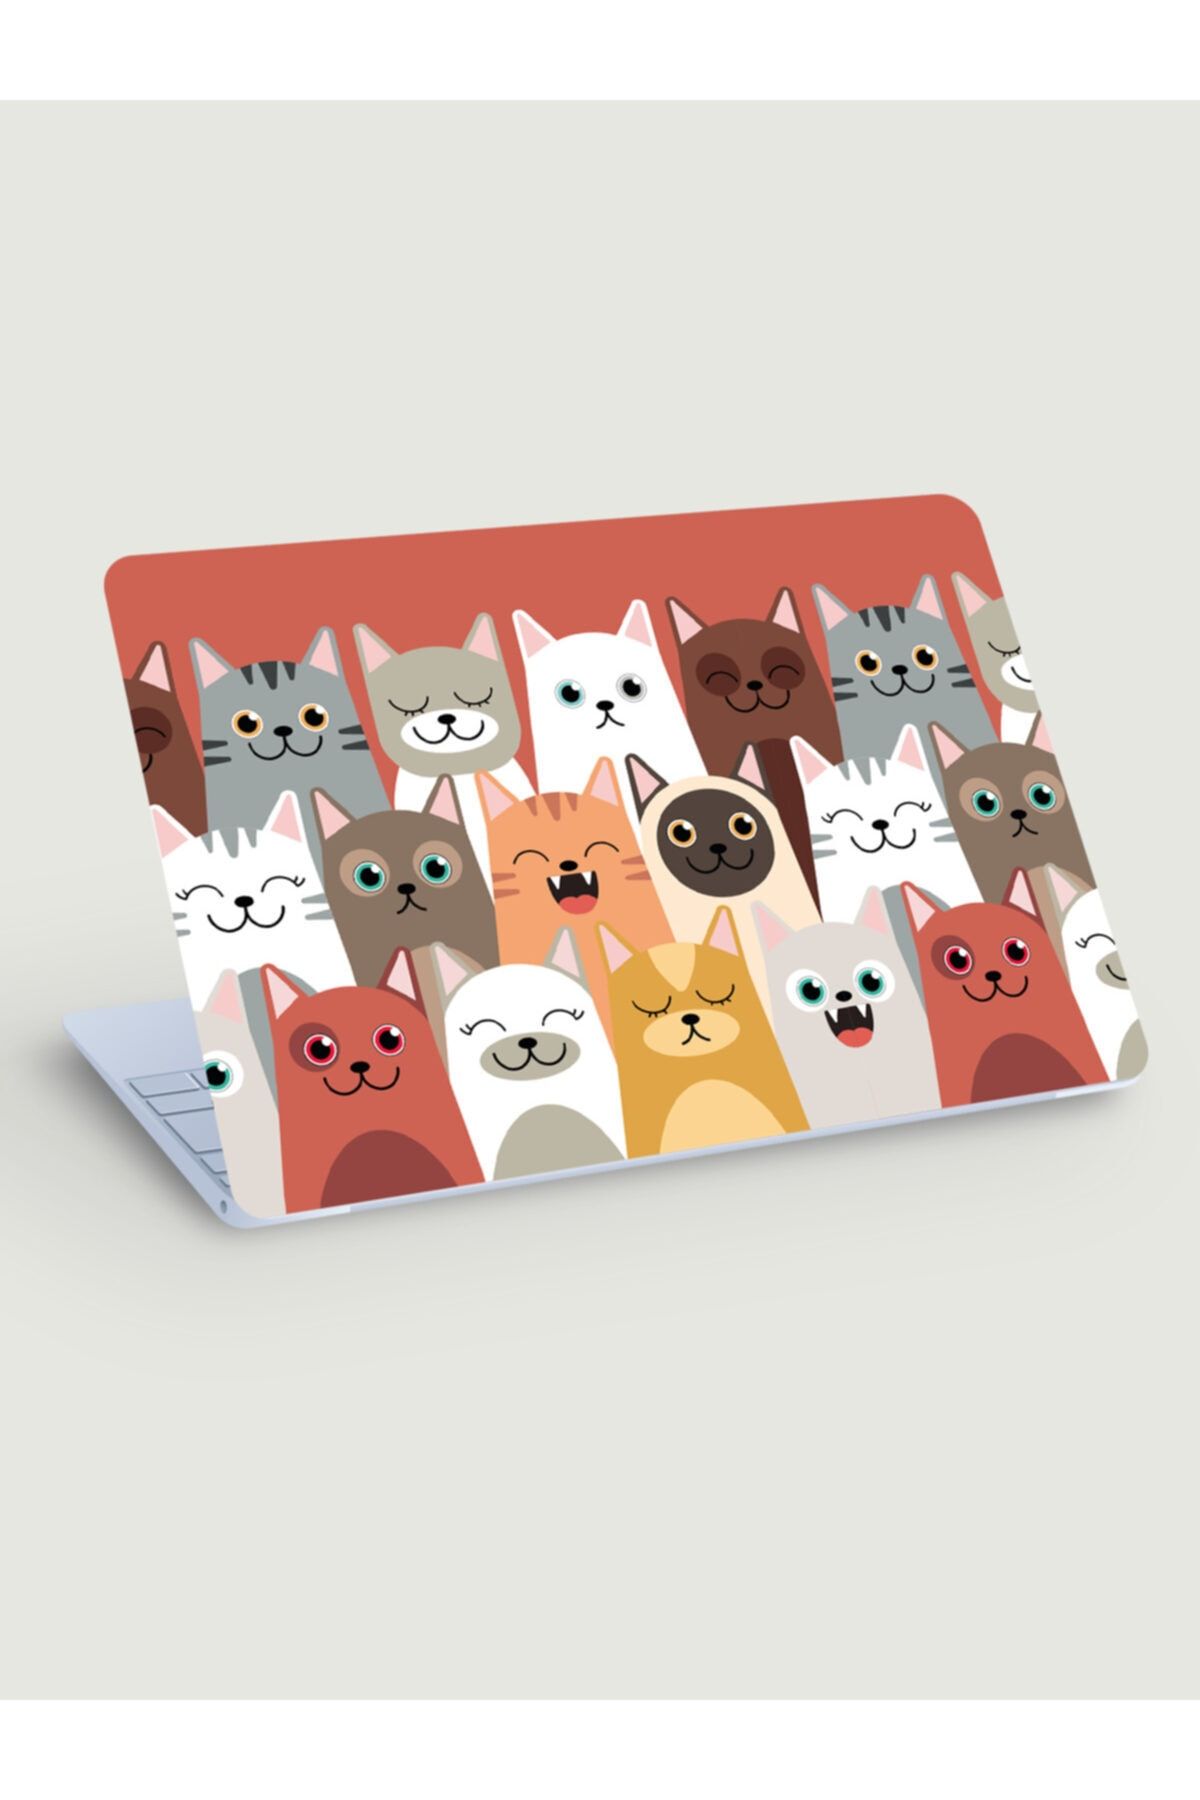 akcepazar Sevimli Kediler Temalı Bilgisayar Laptop Pc Macbook Üzerine Kaplama Için Sticker